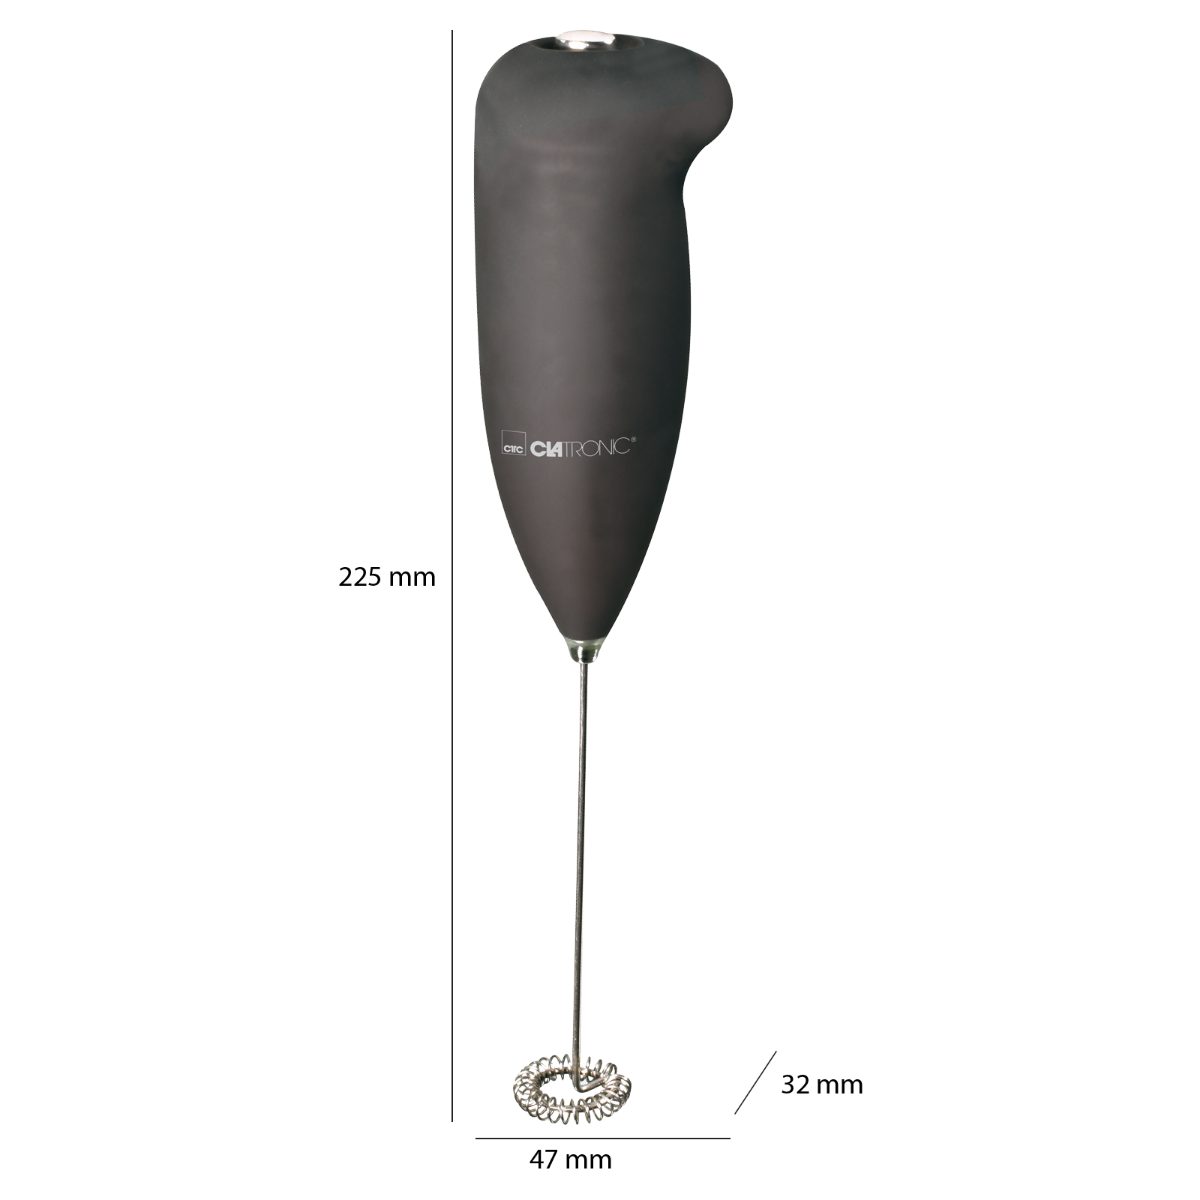 3089, MS Soft-Touch-Gehäuse, Edelstahl-Schaumschläger Milchaufschäumer schwarz CLATRONIC